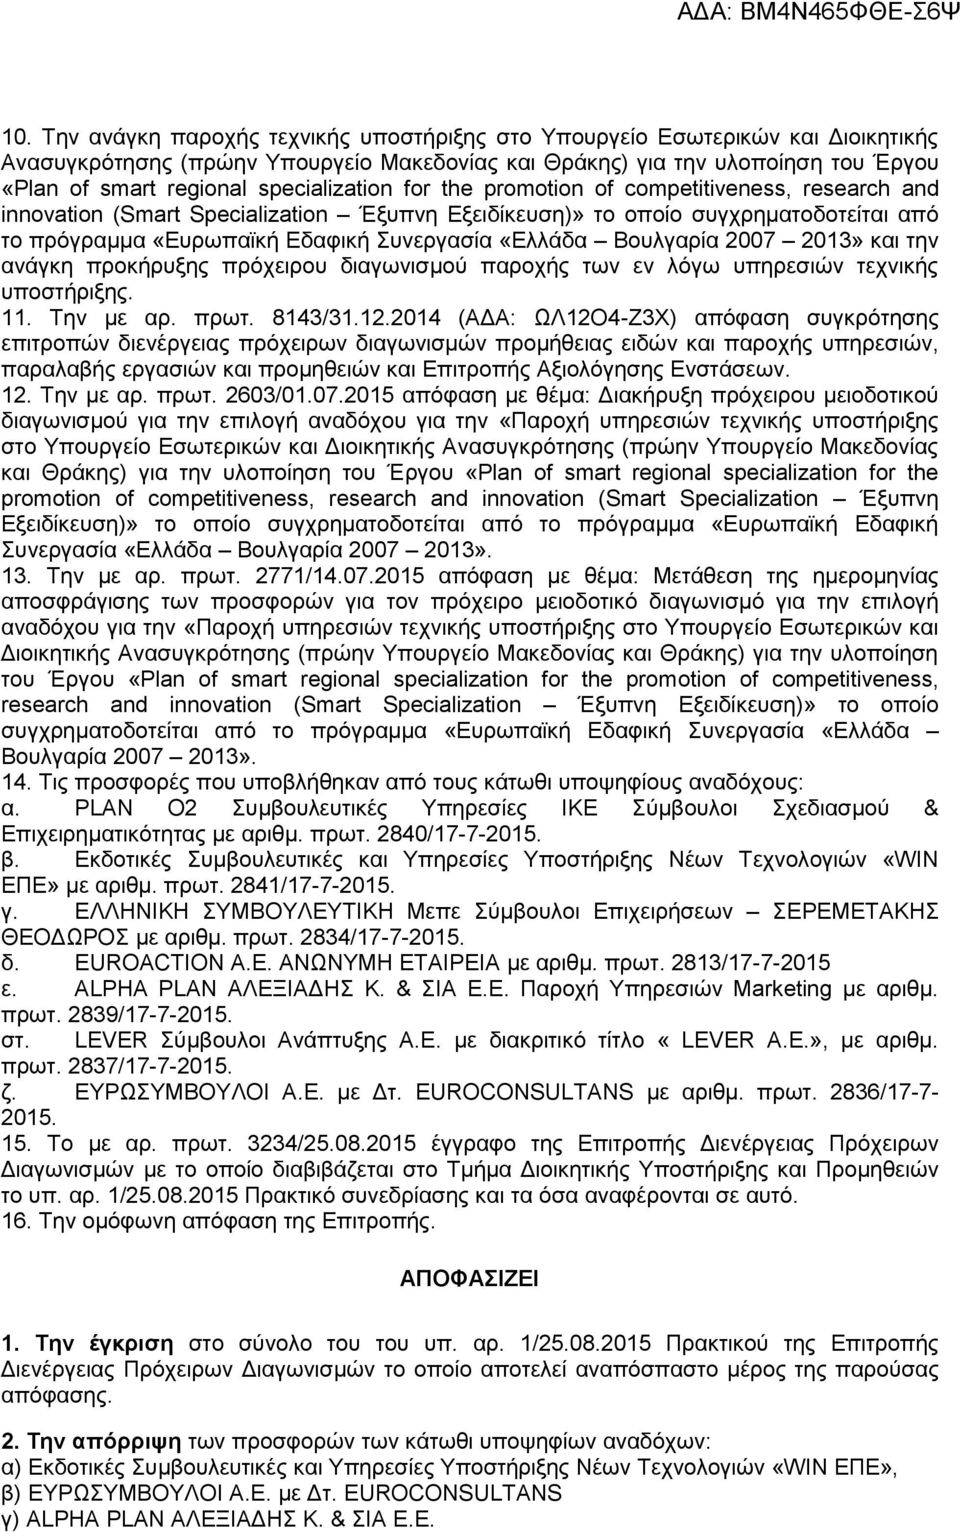 «Ελλάδα Βουλγαρία 2007 2013» και την ανάγκη προκήρυξης πρόχειρου διαγωνισμού παροχής των εν λόγω υπηρεσιών τεχνικής υποστήριξης. 11. Την με αρ. πρωτ. 8143/31.12.